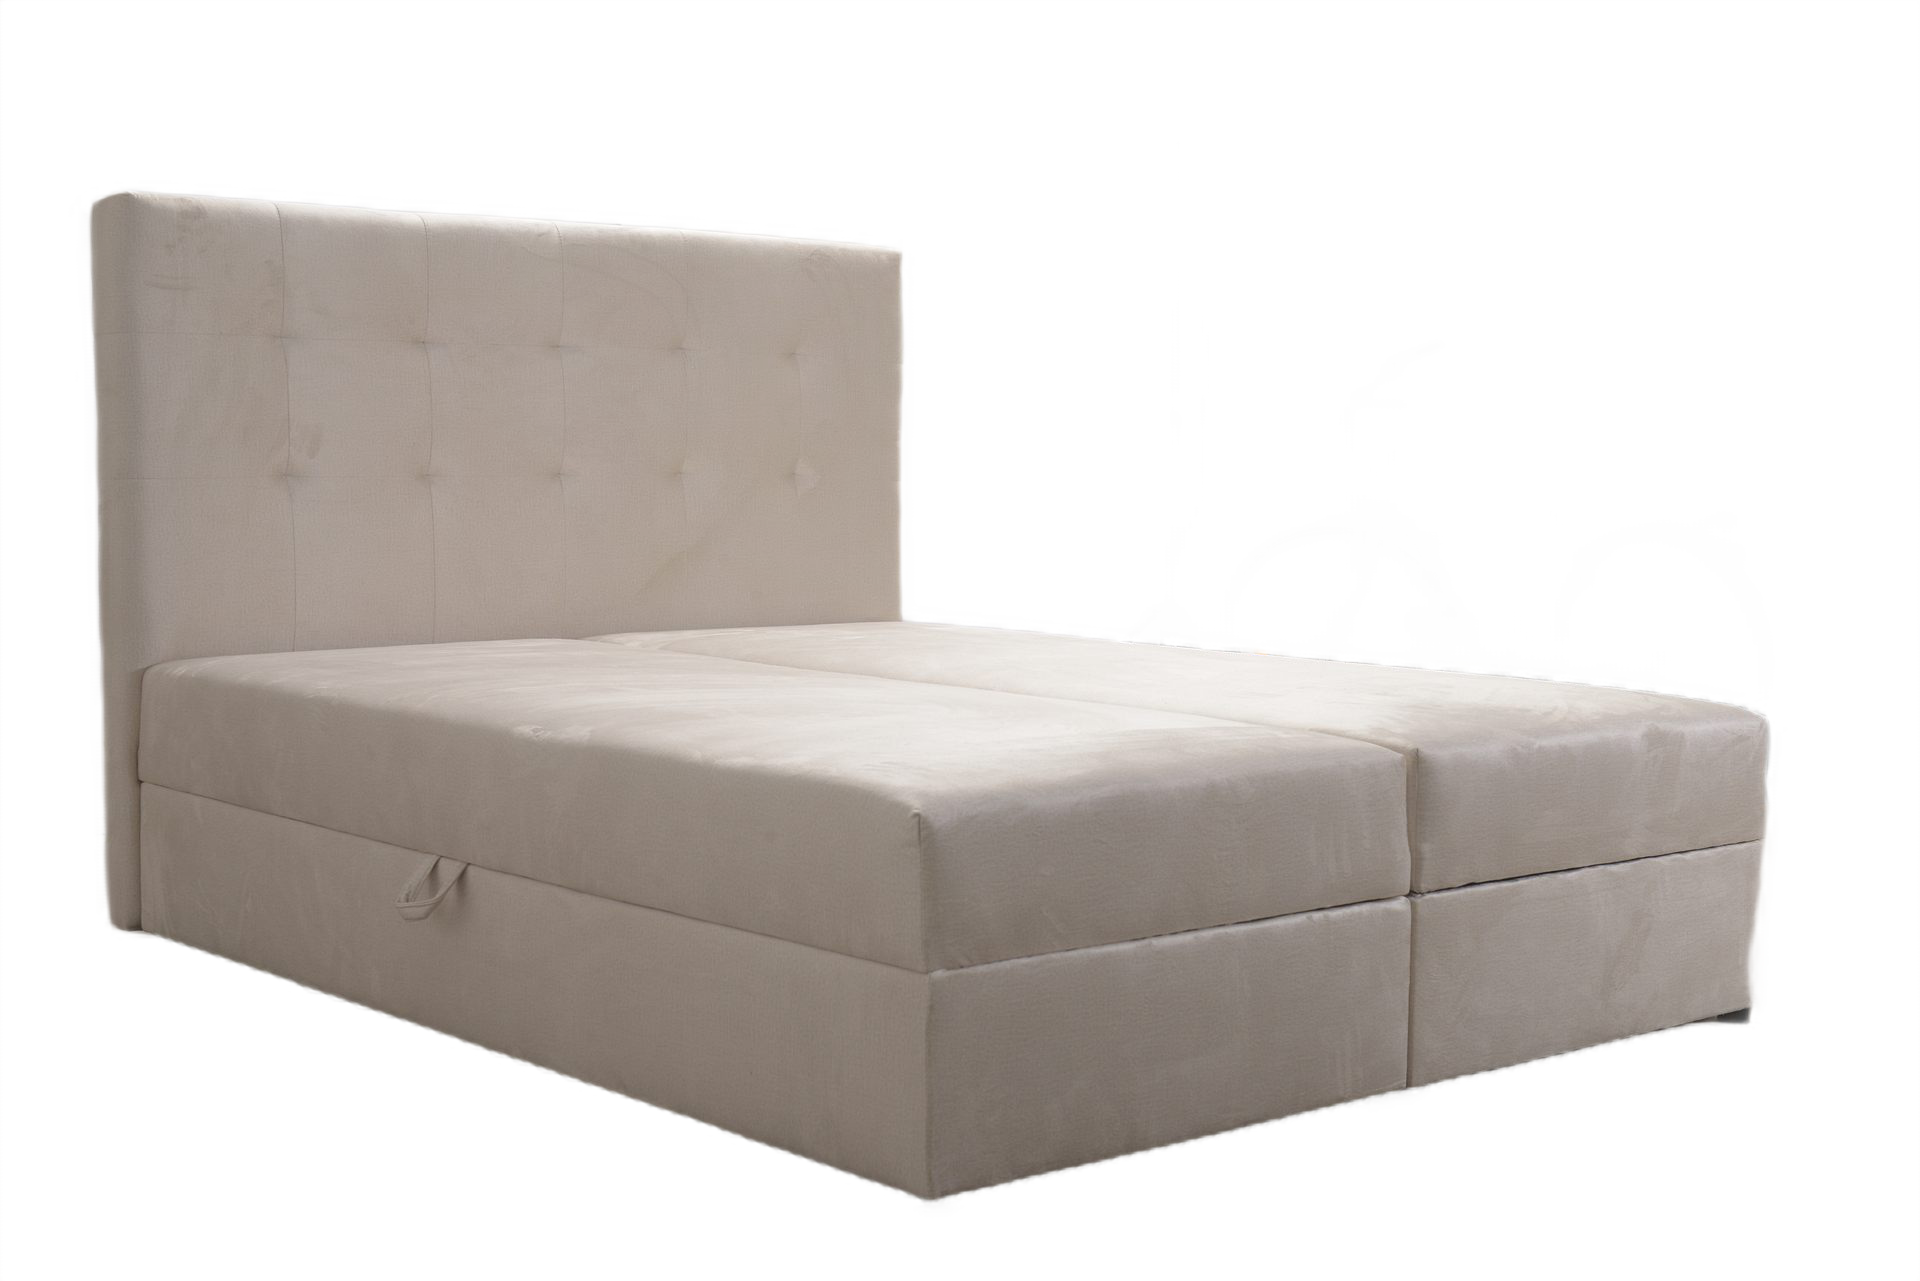 Tanie łóżko kontynentalne 140x200 cm z dwoma pojemnikami na pościel taniej niż IKEA Bodzio Agata